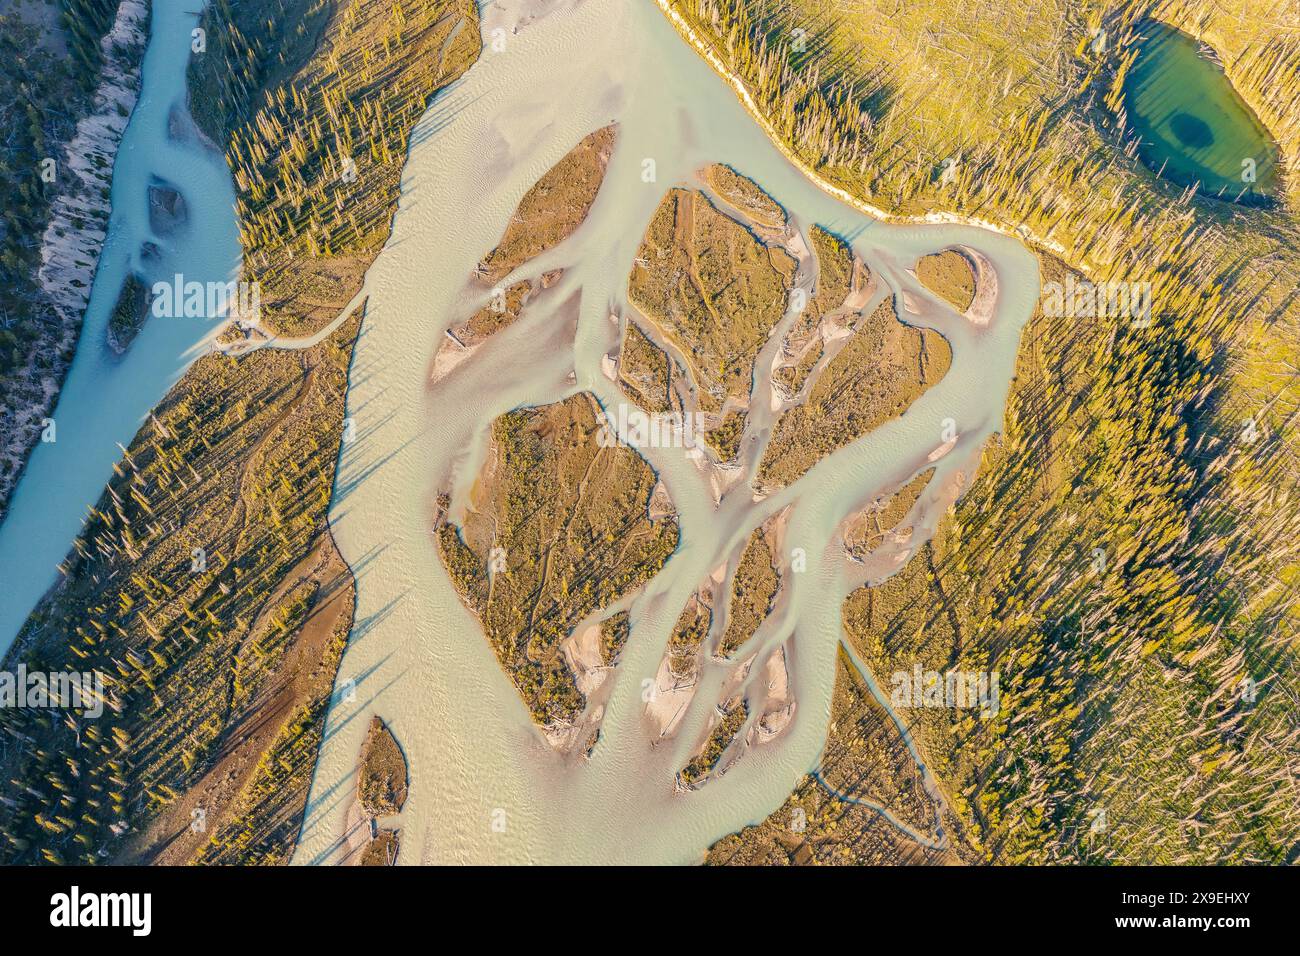 Vue de dessus drone vidéo d'une rivière sinueuse pendant une inondation. Forêt, rochers. Nordegg, Alberta, Canada. Banque D'Images